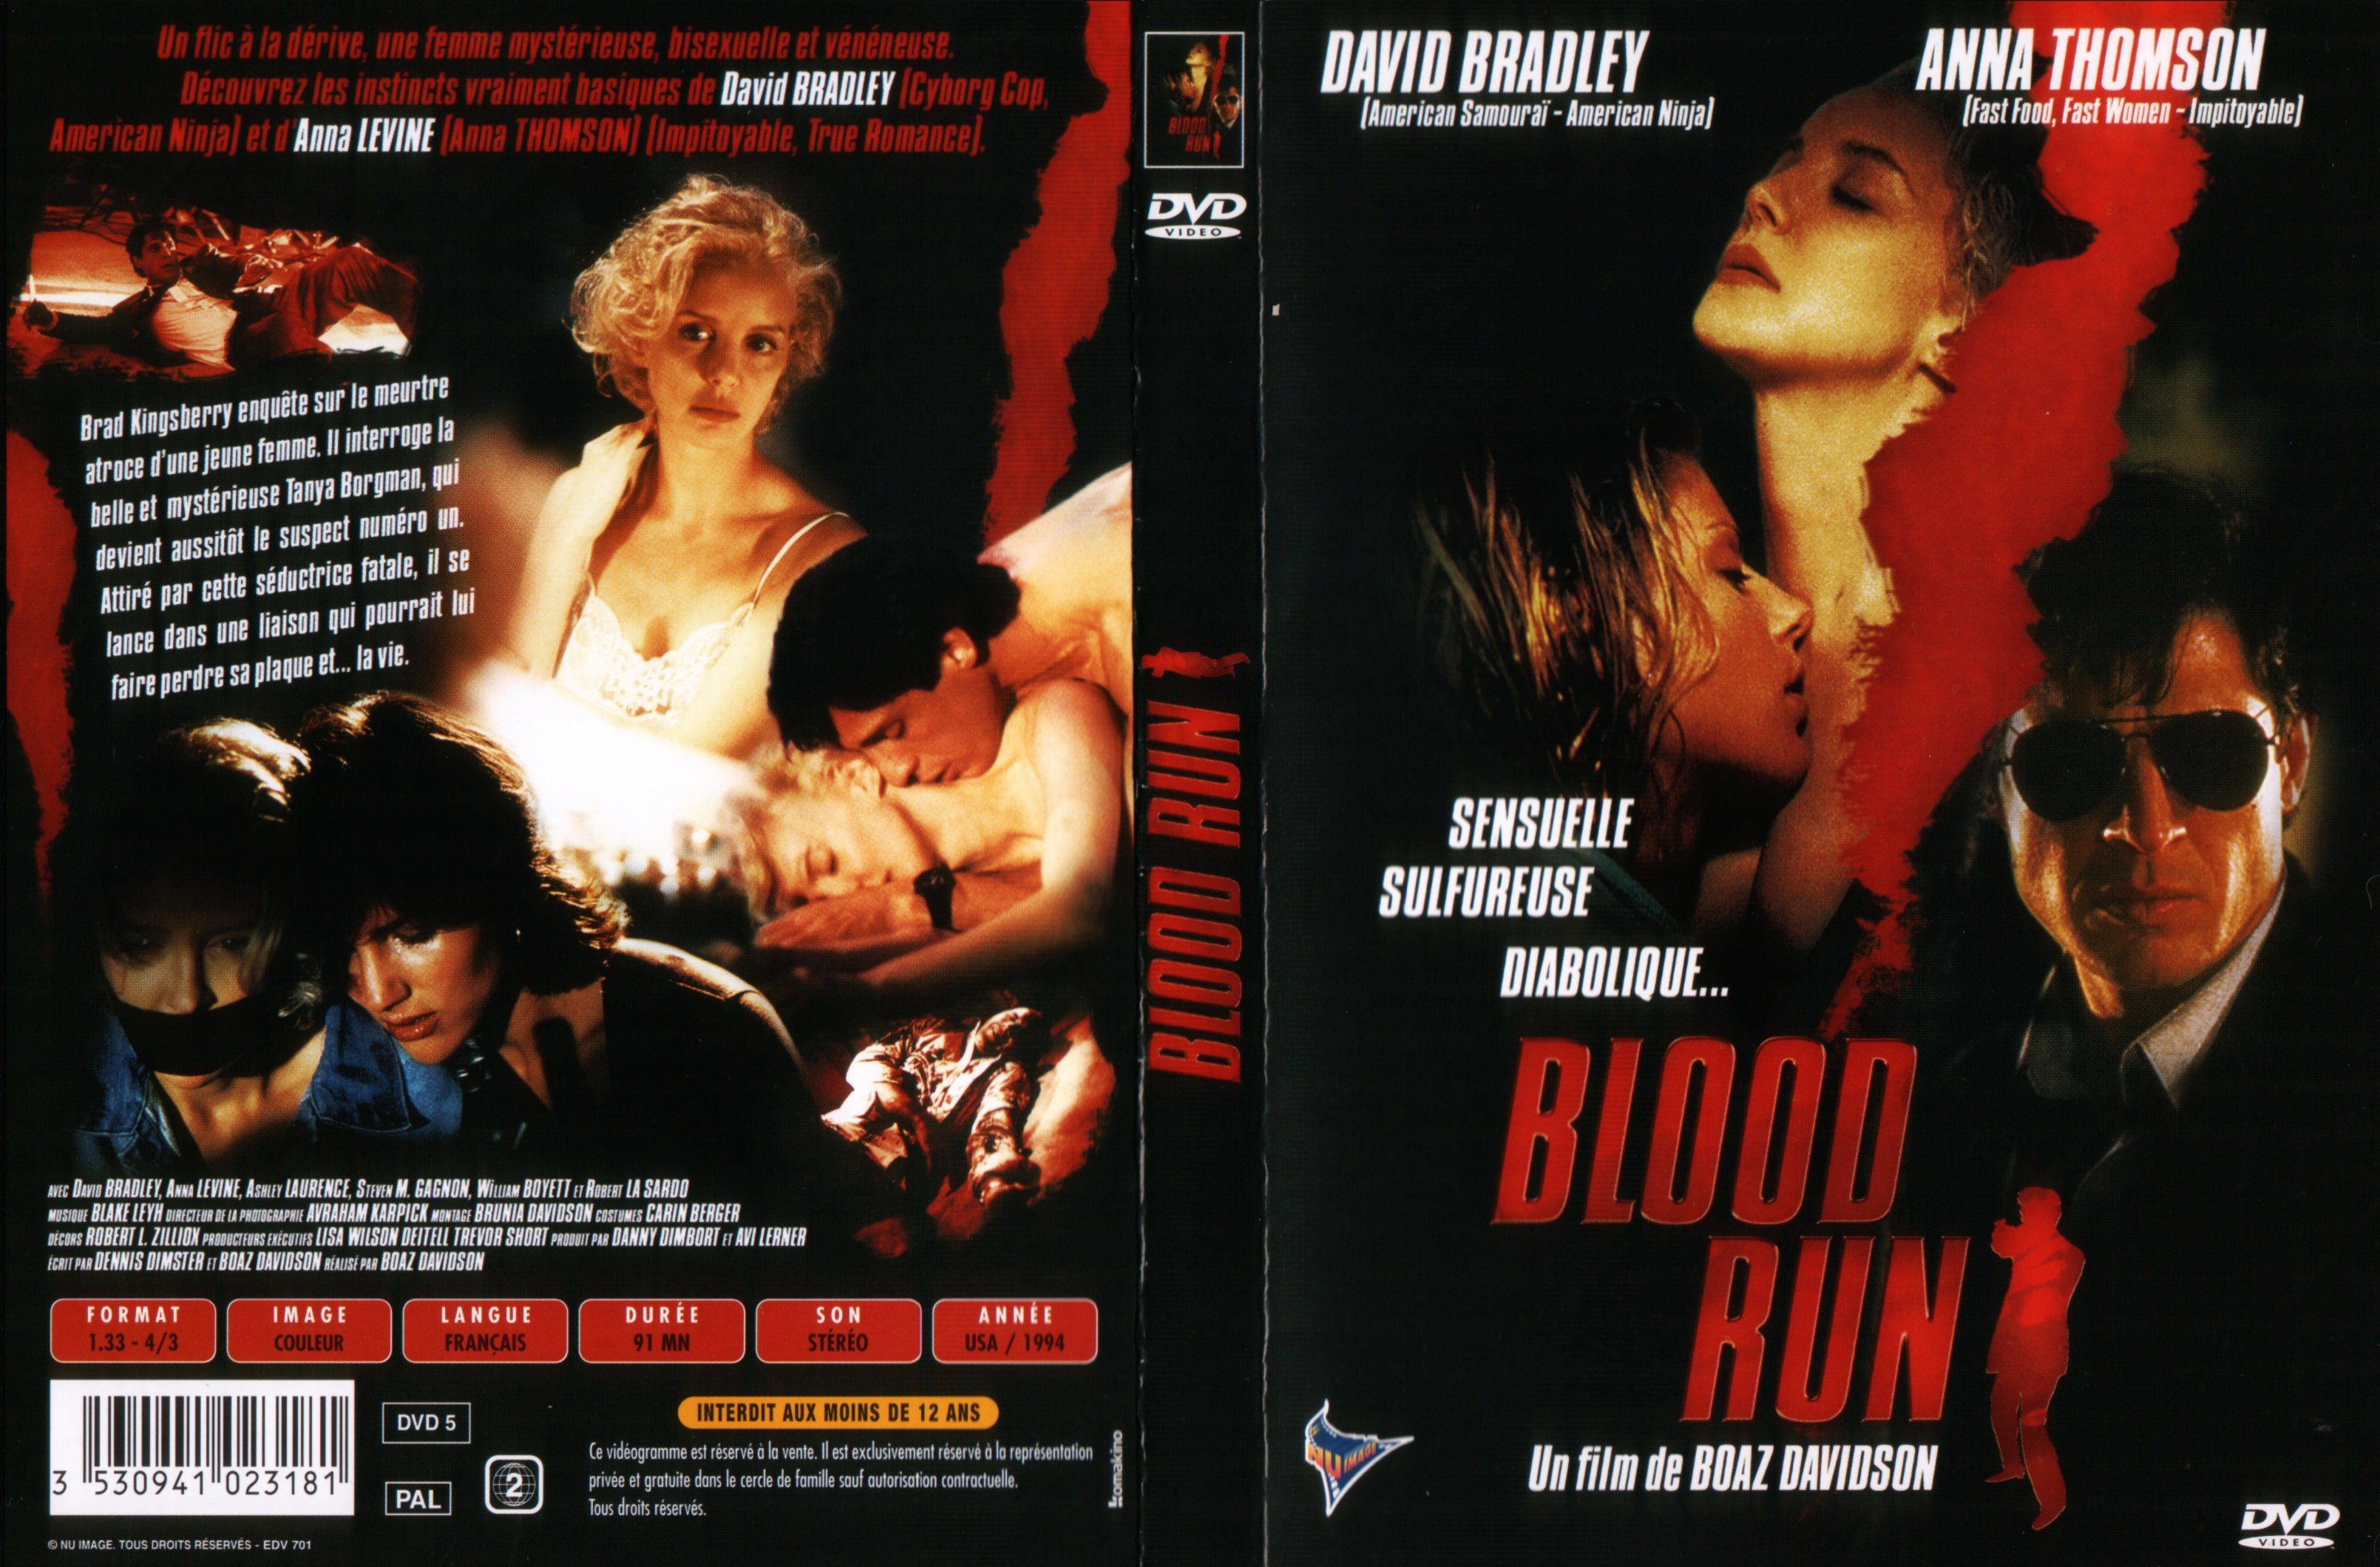 Jaquette DVD Blood run